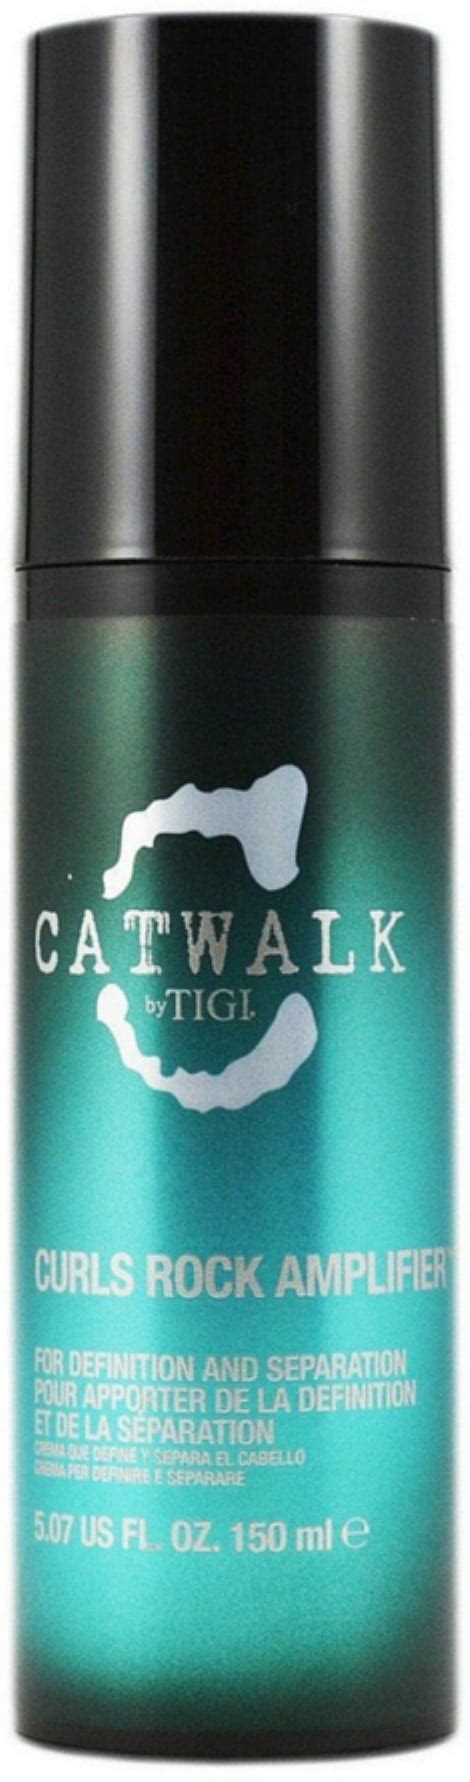 Tigi Catwalk Curls Rock Amplifier Oz Walmart Com